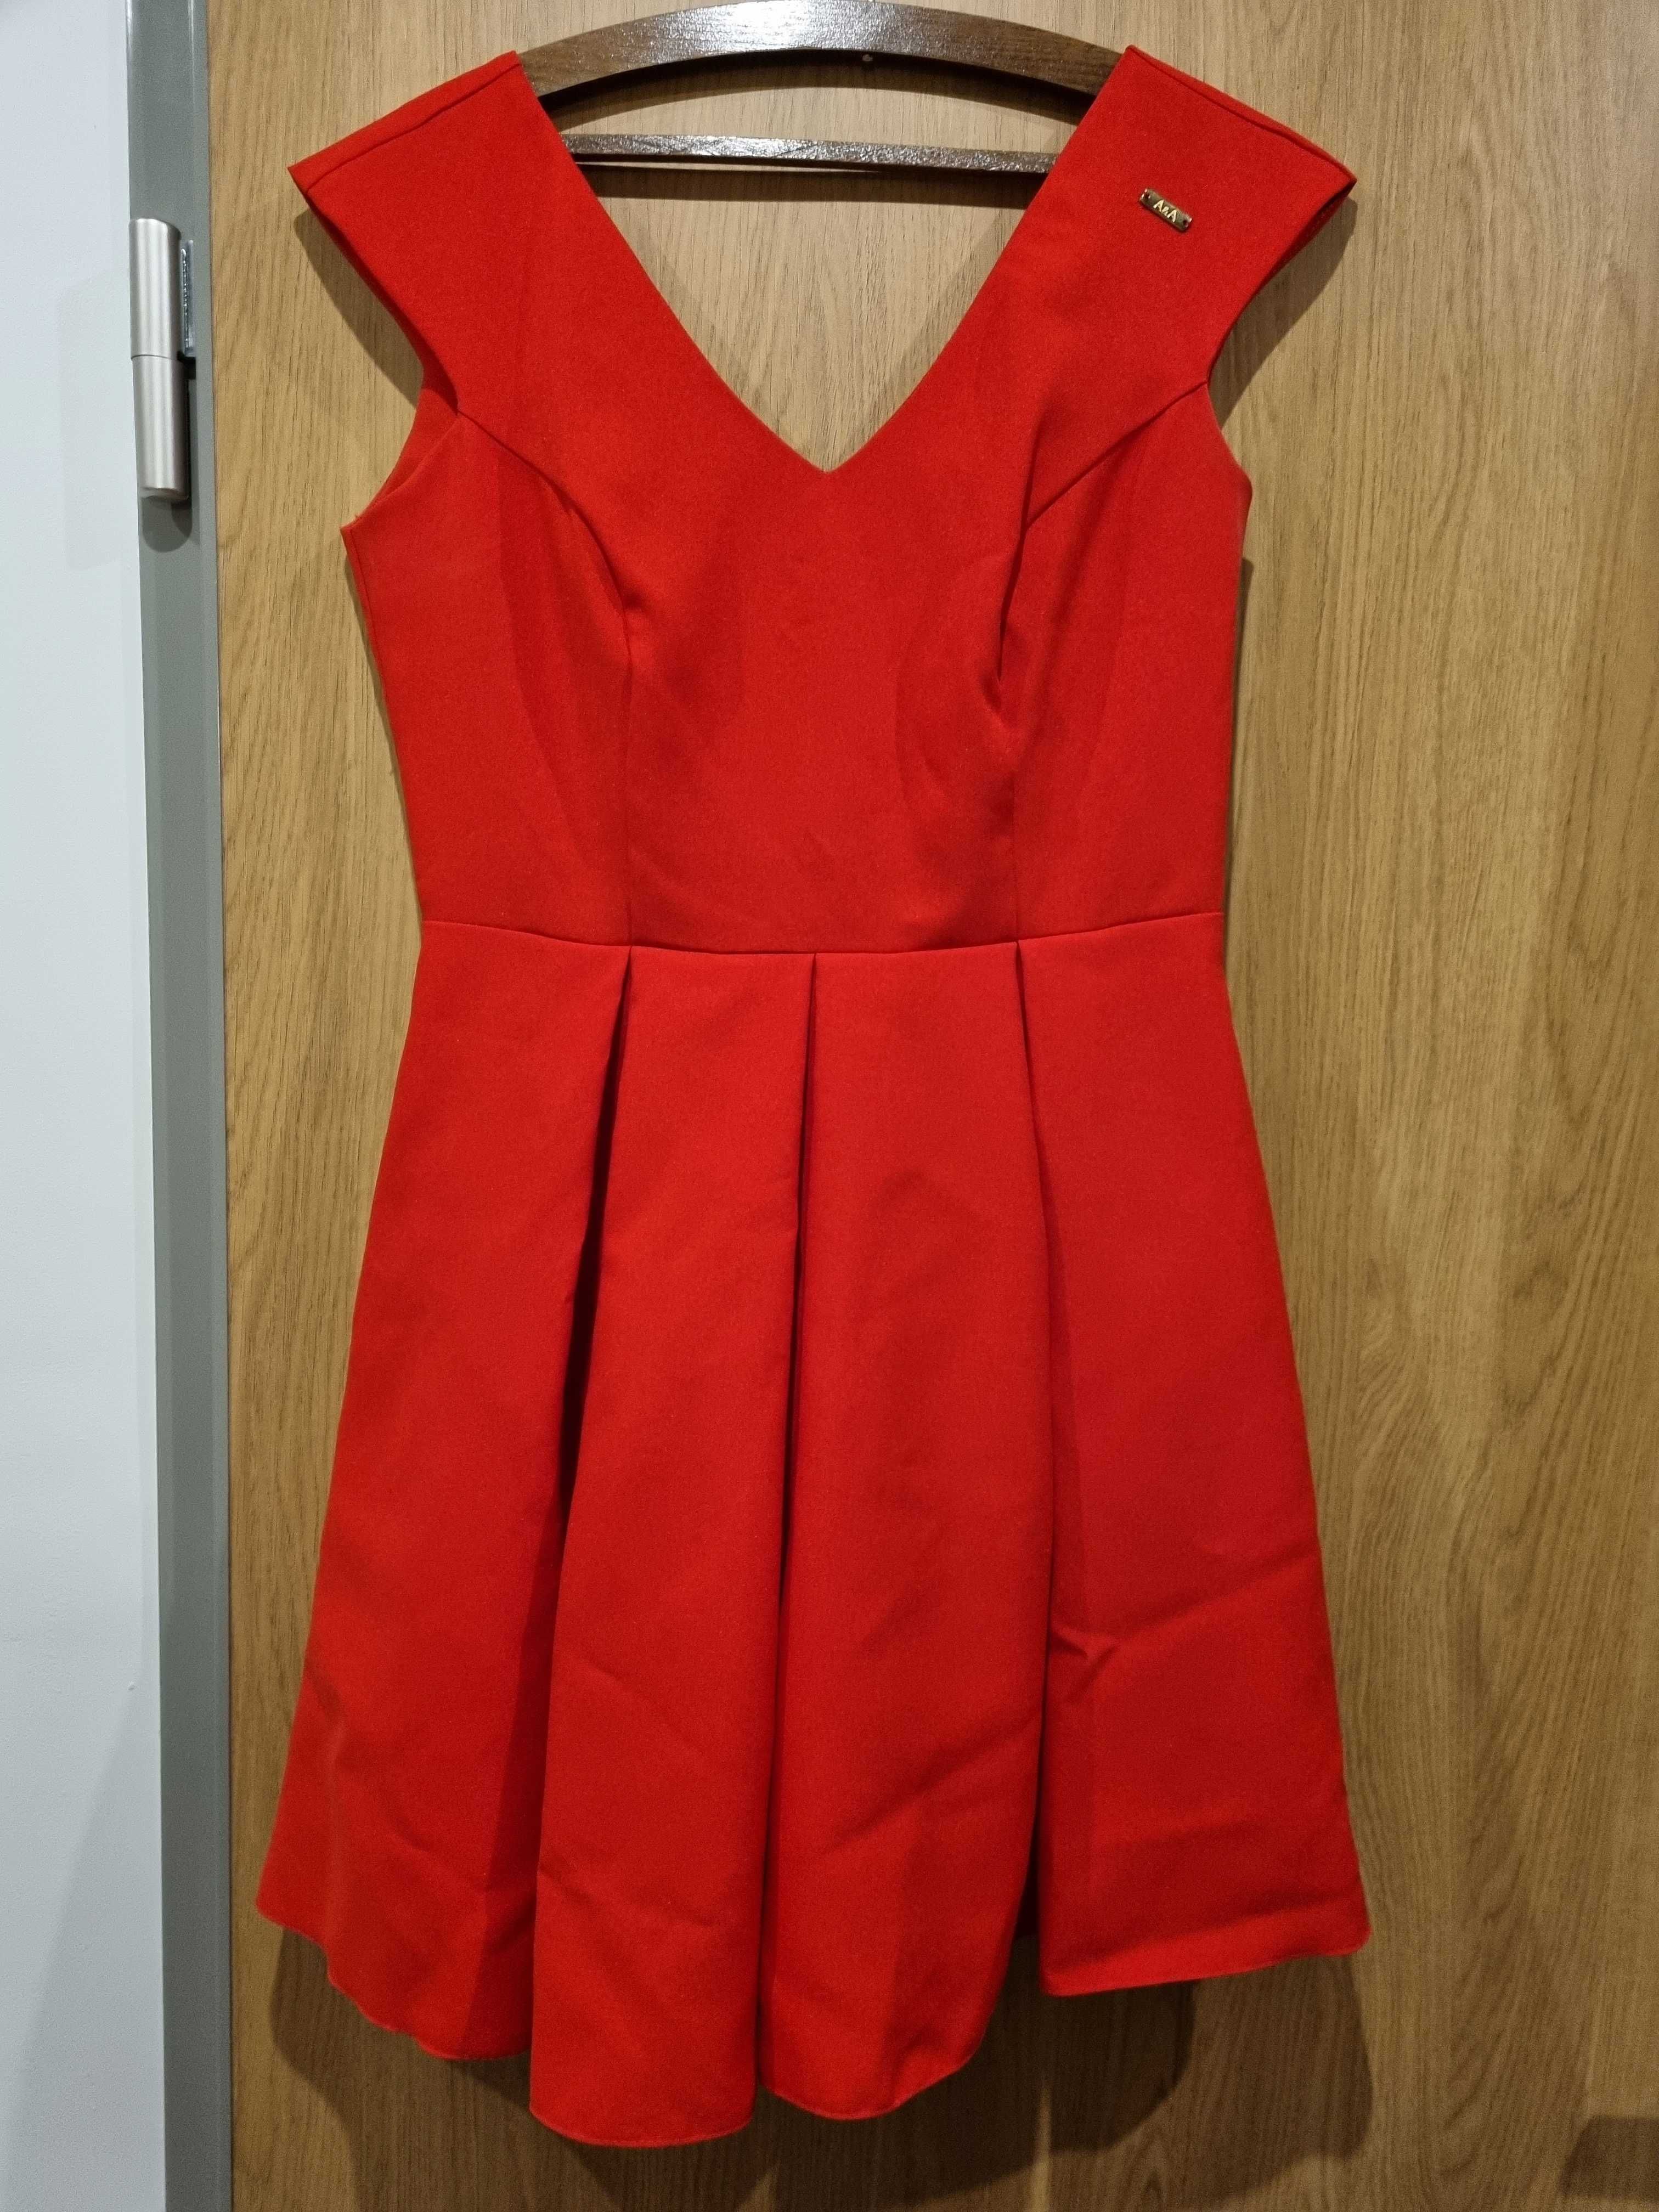 Śliczna czerwona sukienka koktajlowa 40